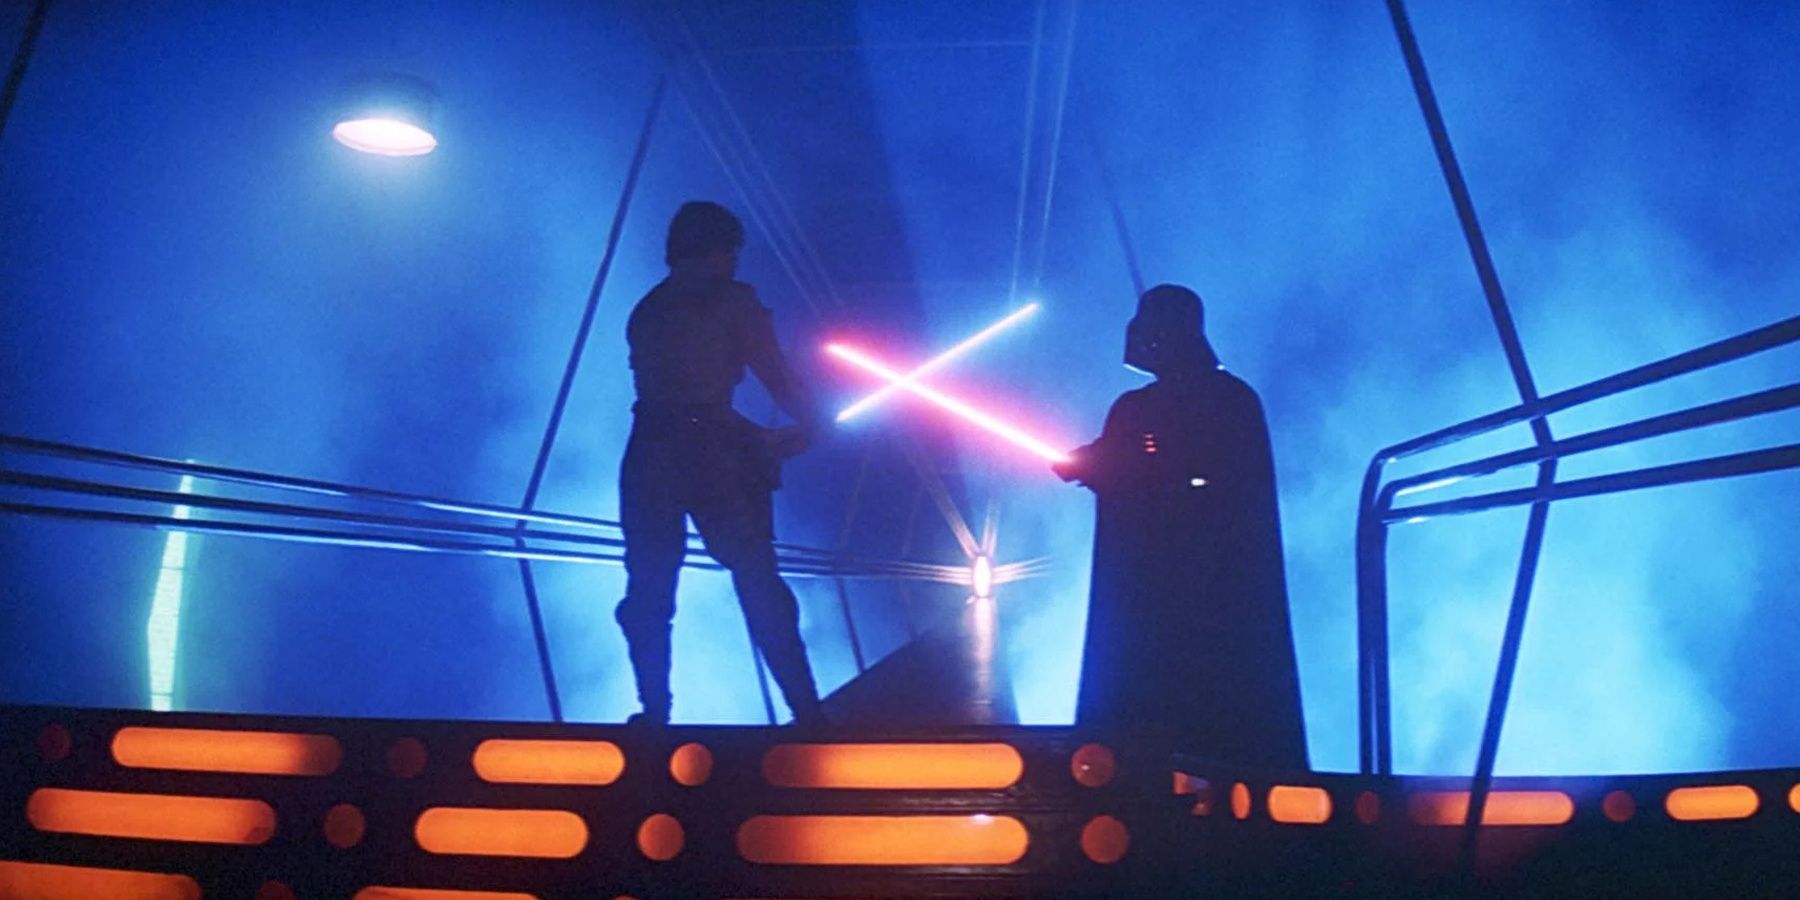 Luke Skywalker and Darth Vader fight in Star Wars: Episode V - The Empire Strikes Back